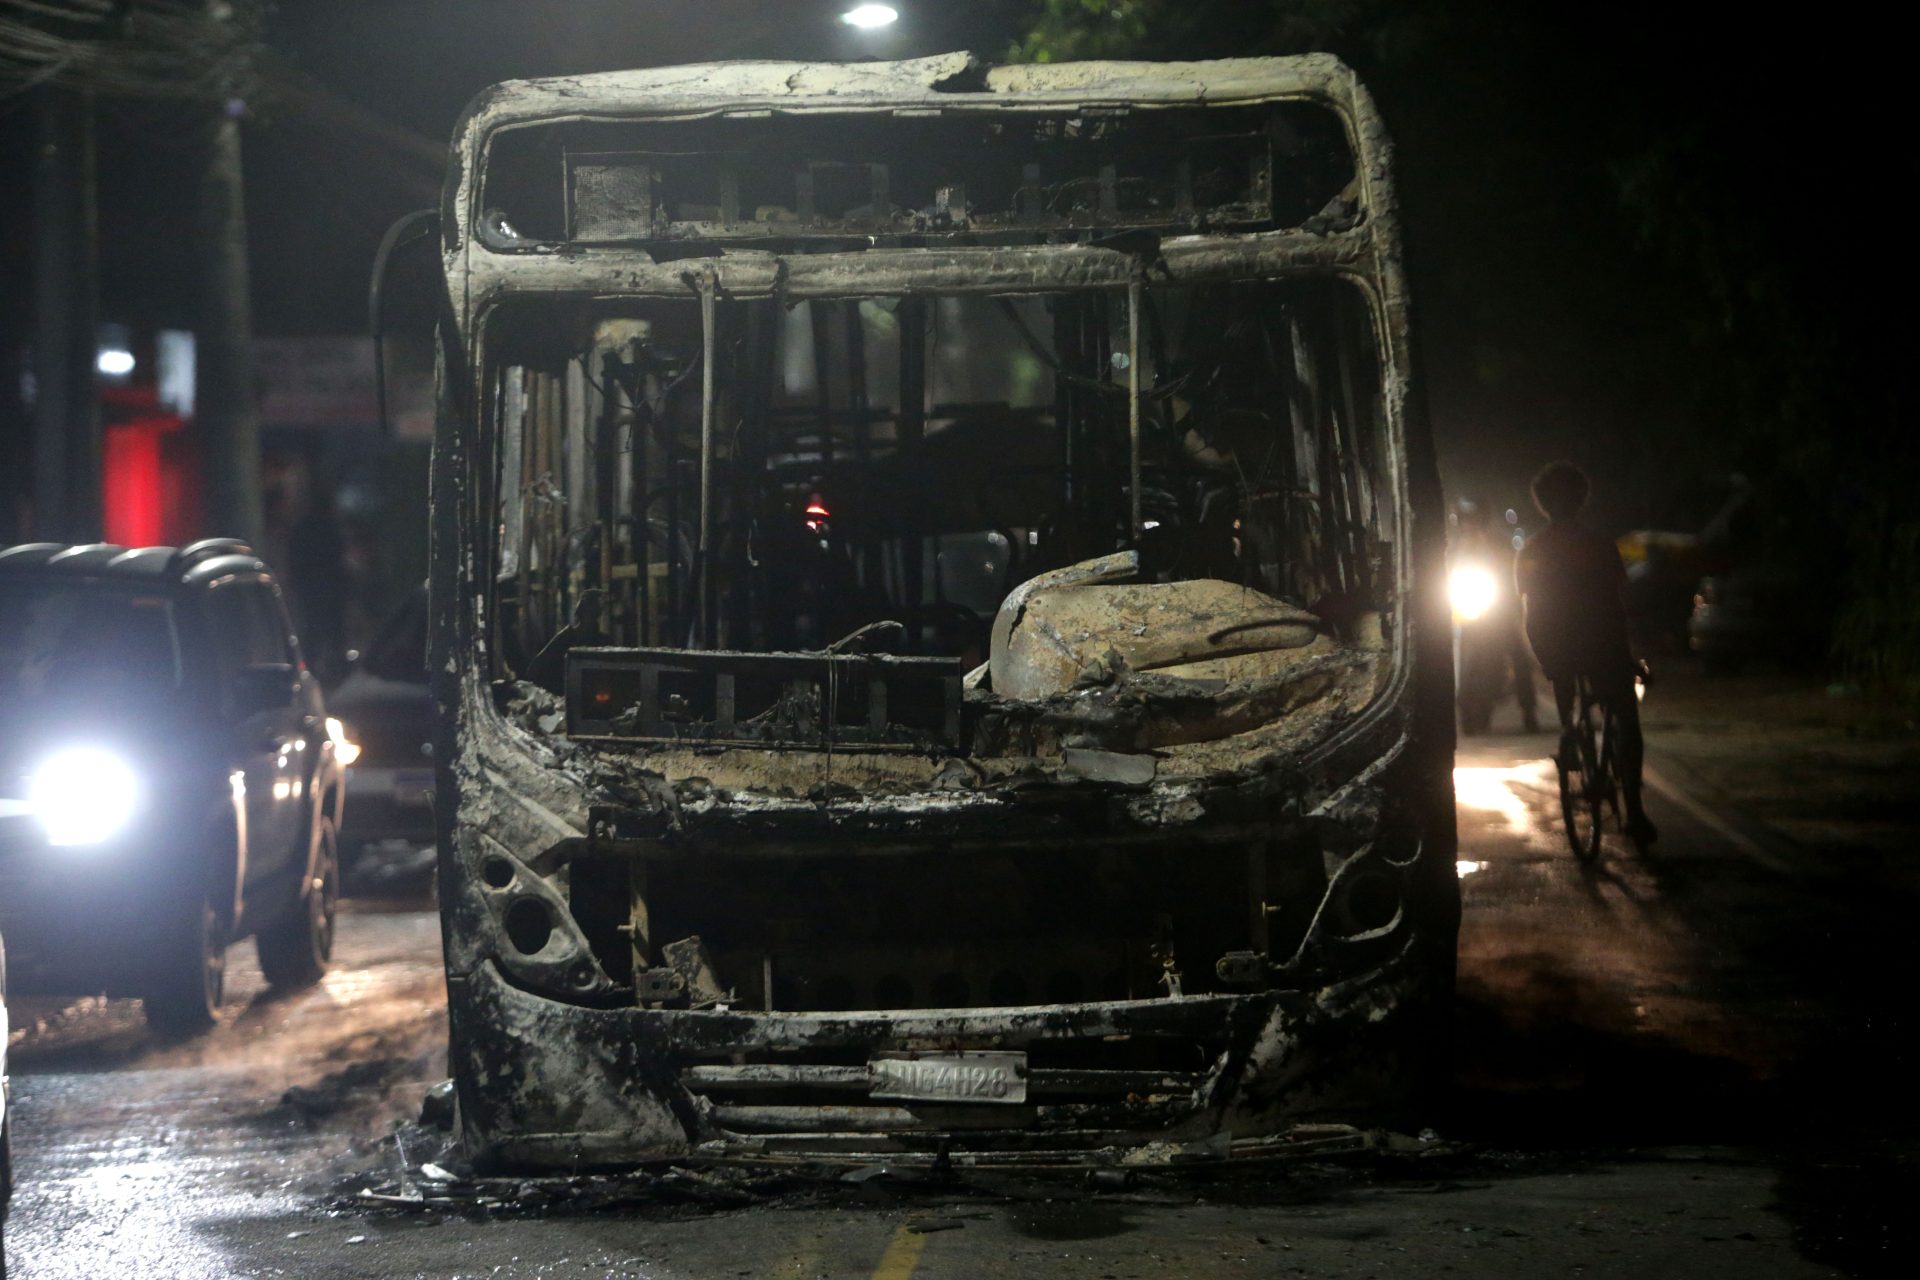 Vista de ônibus queimado na Estrada Benvindo de Novaes na Zona Oeste do Rio de Janeiro - Foto: Pedro Kirilos/Estadão Conteúdo